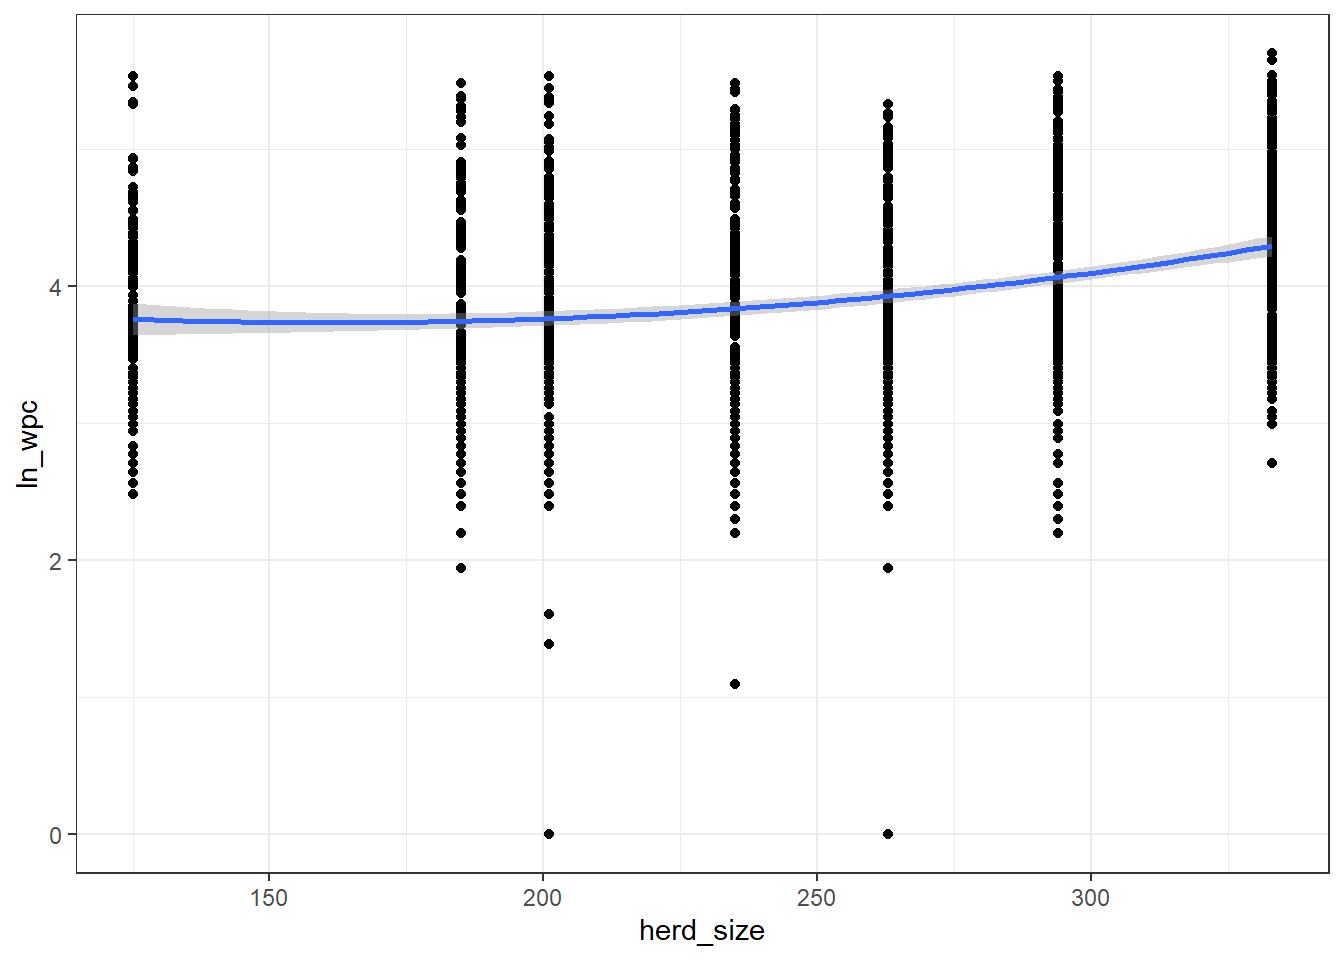 Relation entre la taille du troupeau (herd_size) et le nombre de jours jusqu’à la saillie fécondante (wpc) avec courbe lissée avec un facteur de 2.